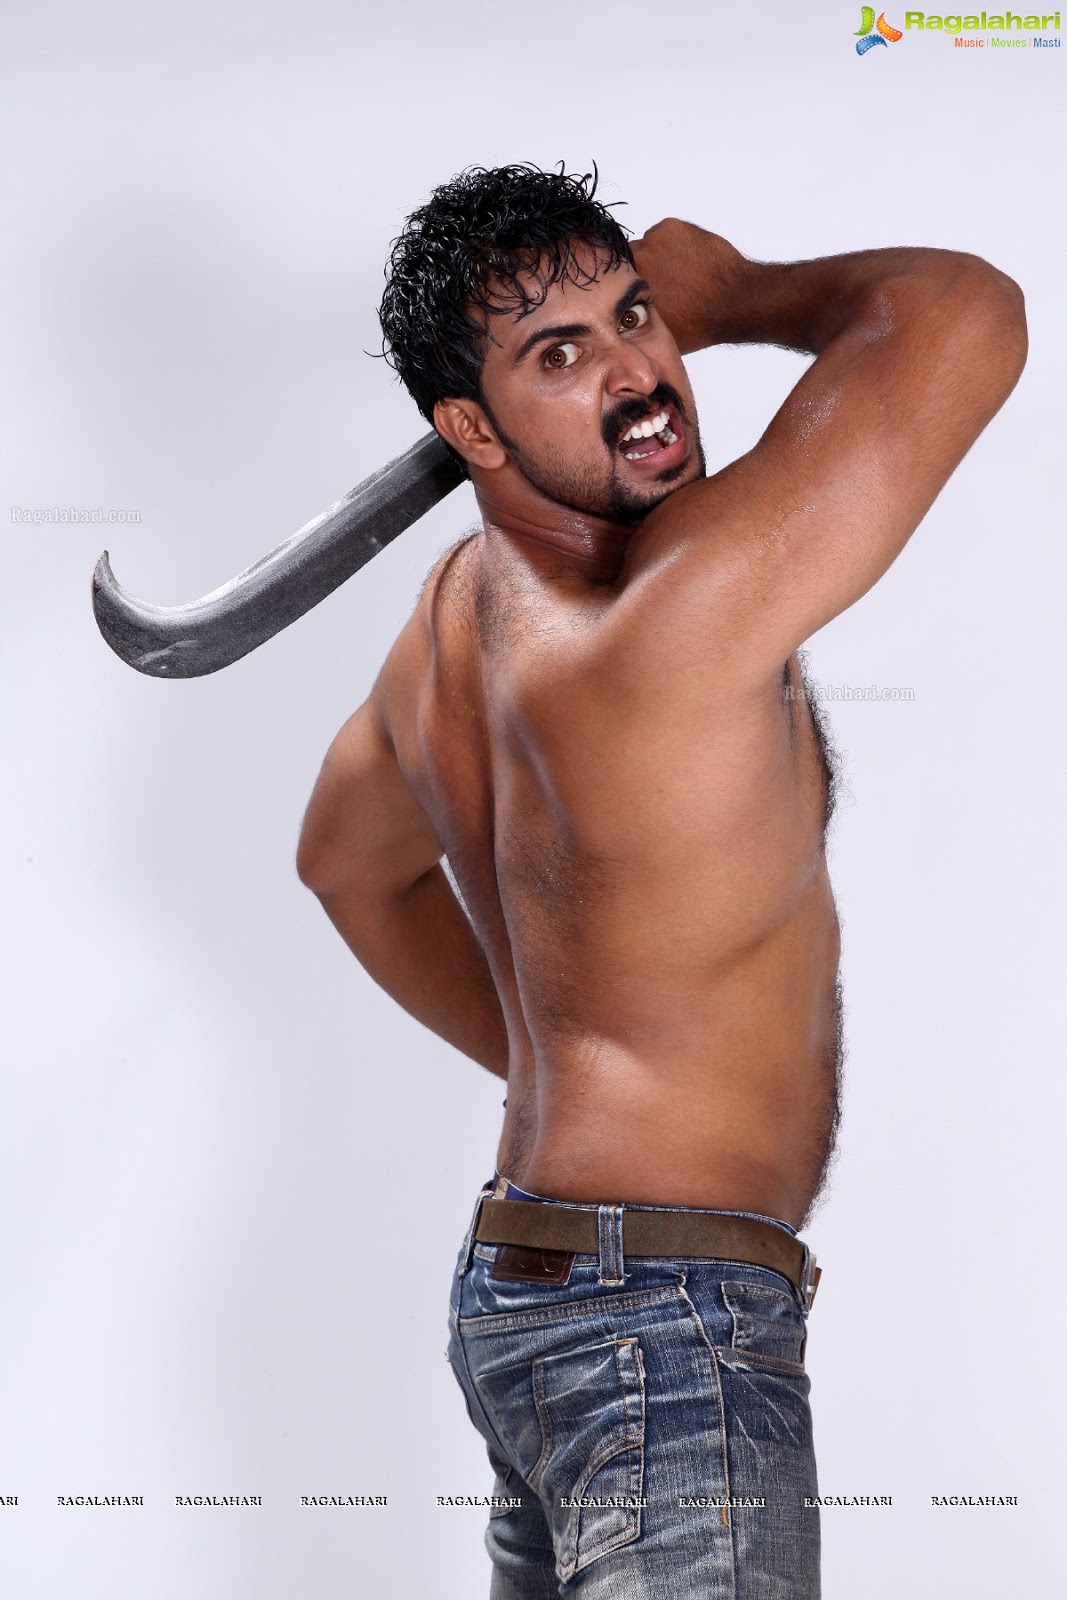 Tamil male actors nude gay sex photos today 7